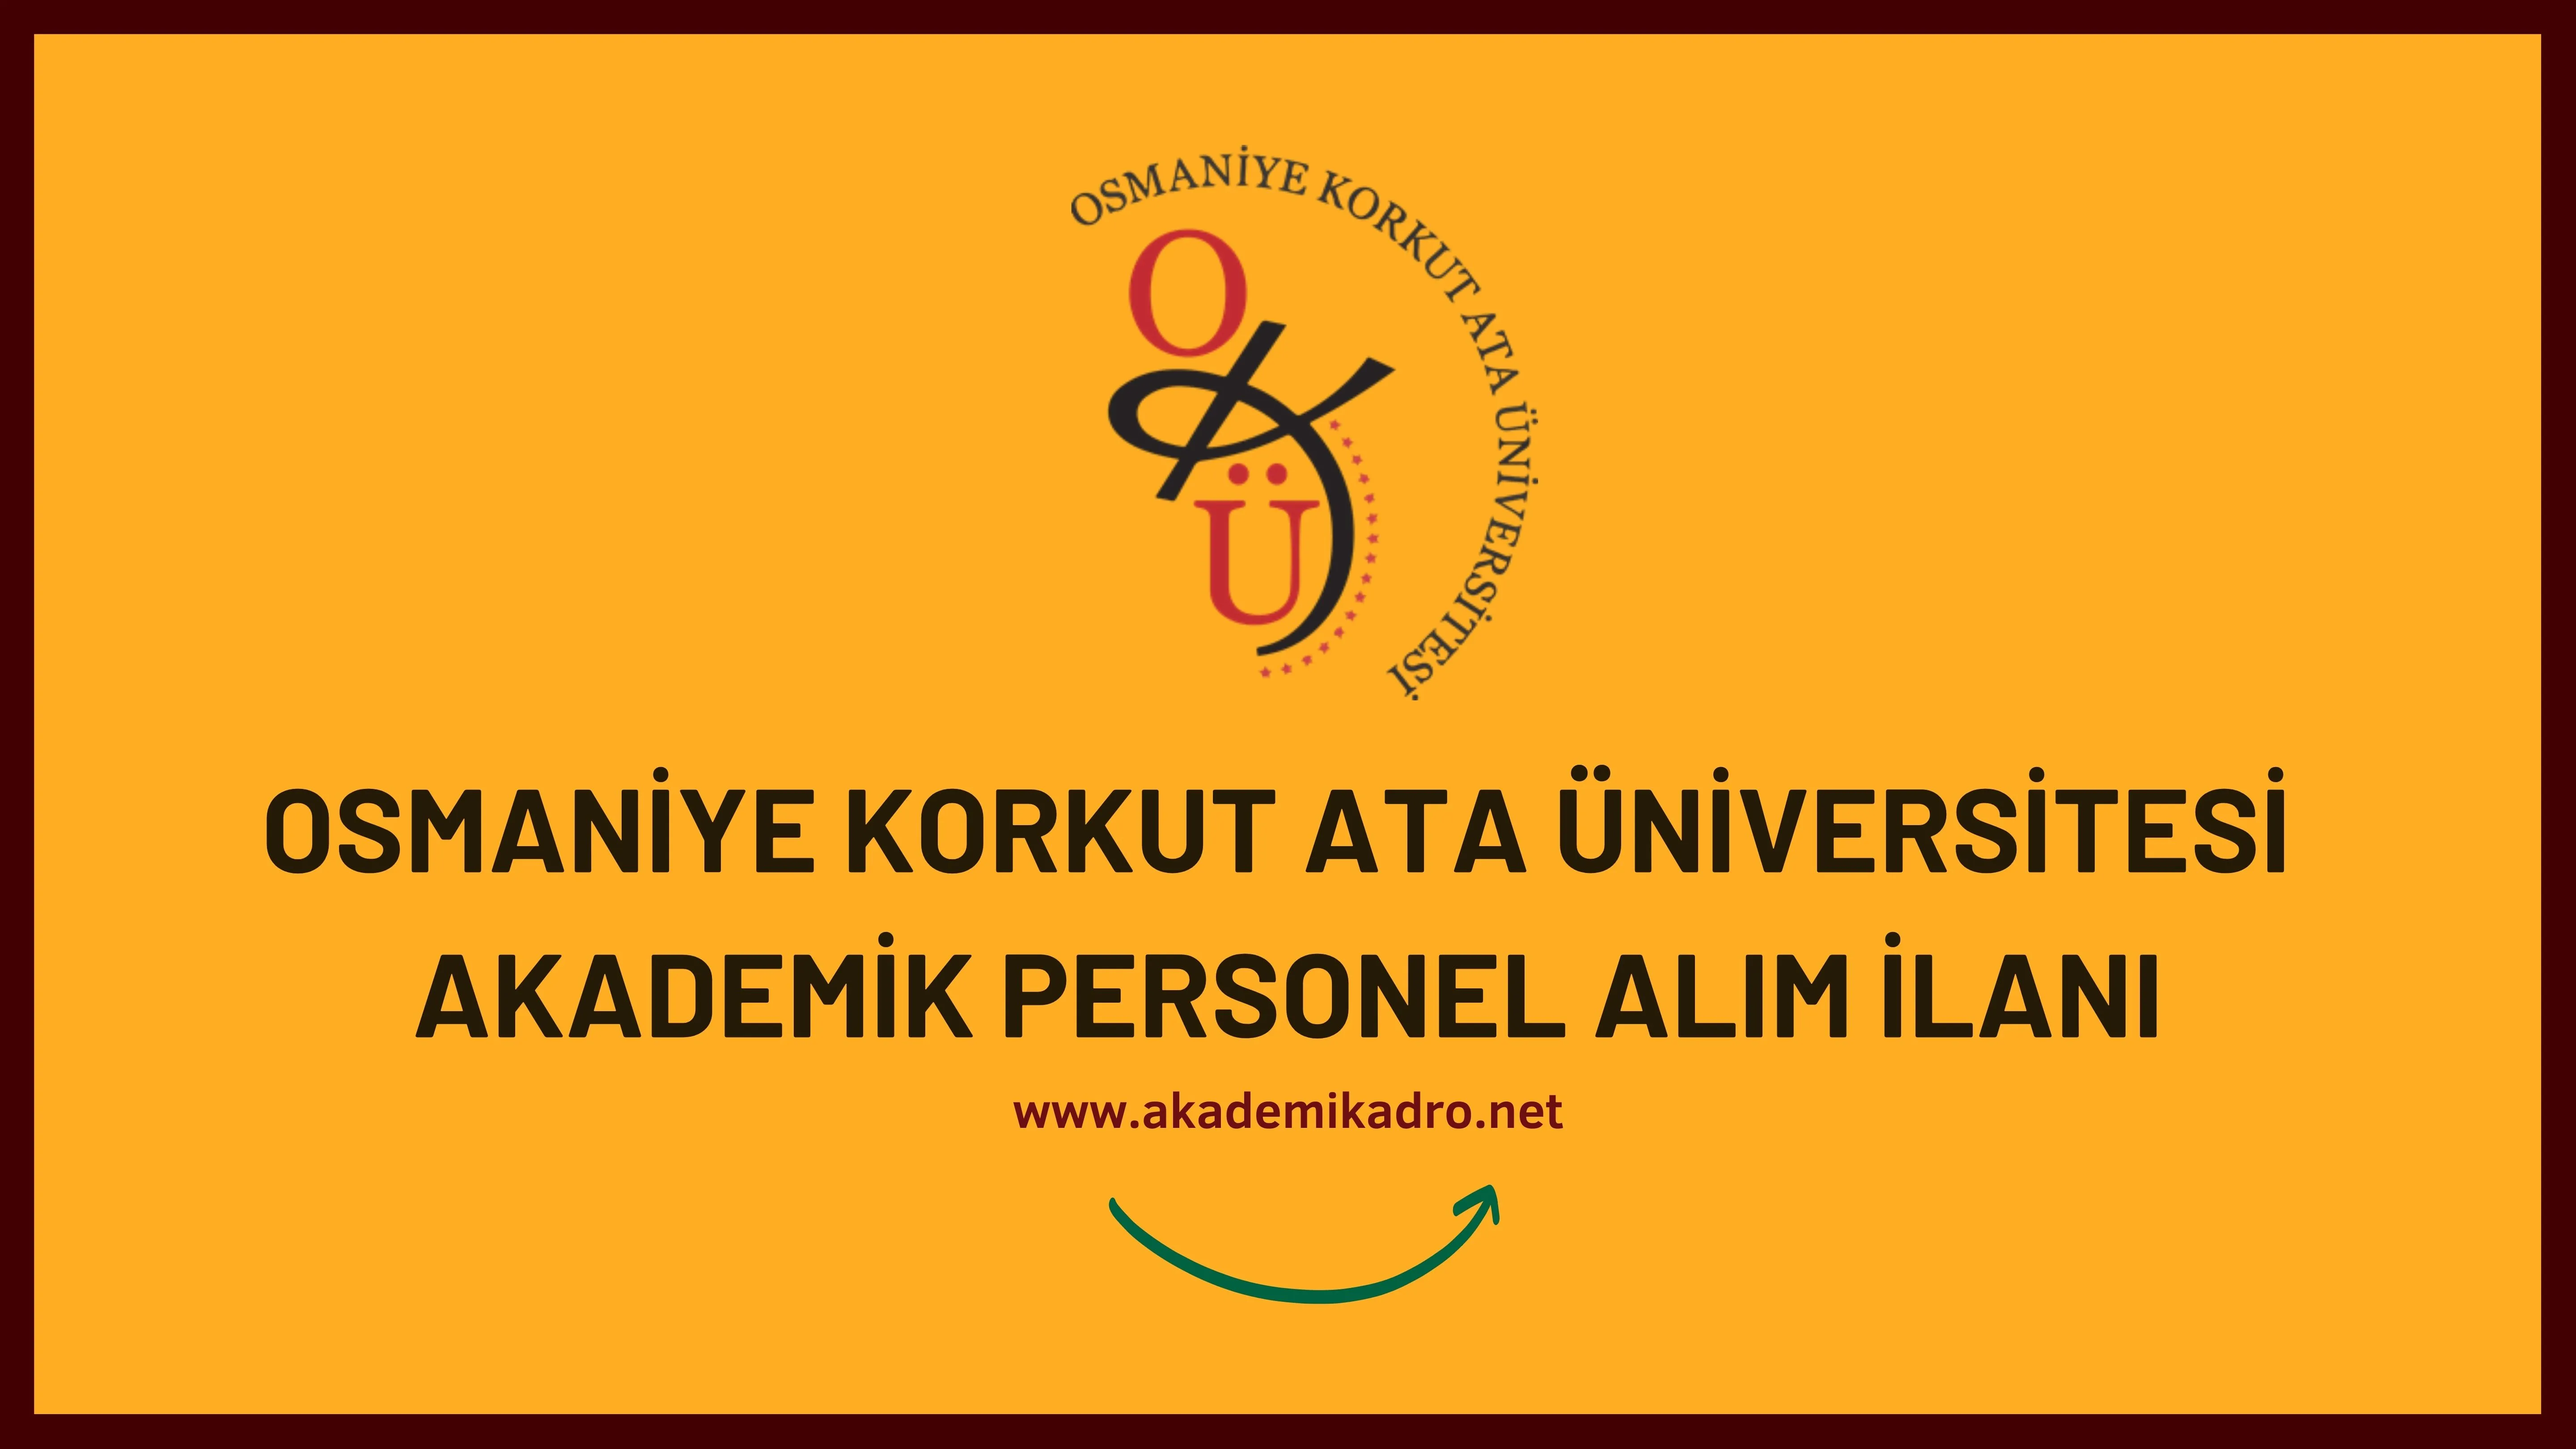 Osmaniye Korkut Ata Üniversitesi birçok alandan 43 akademik personel alacak. 